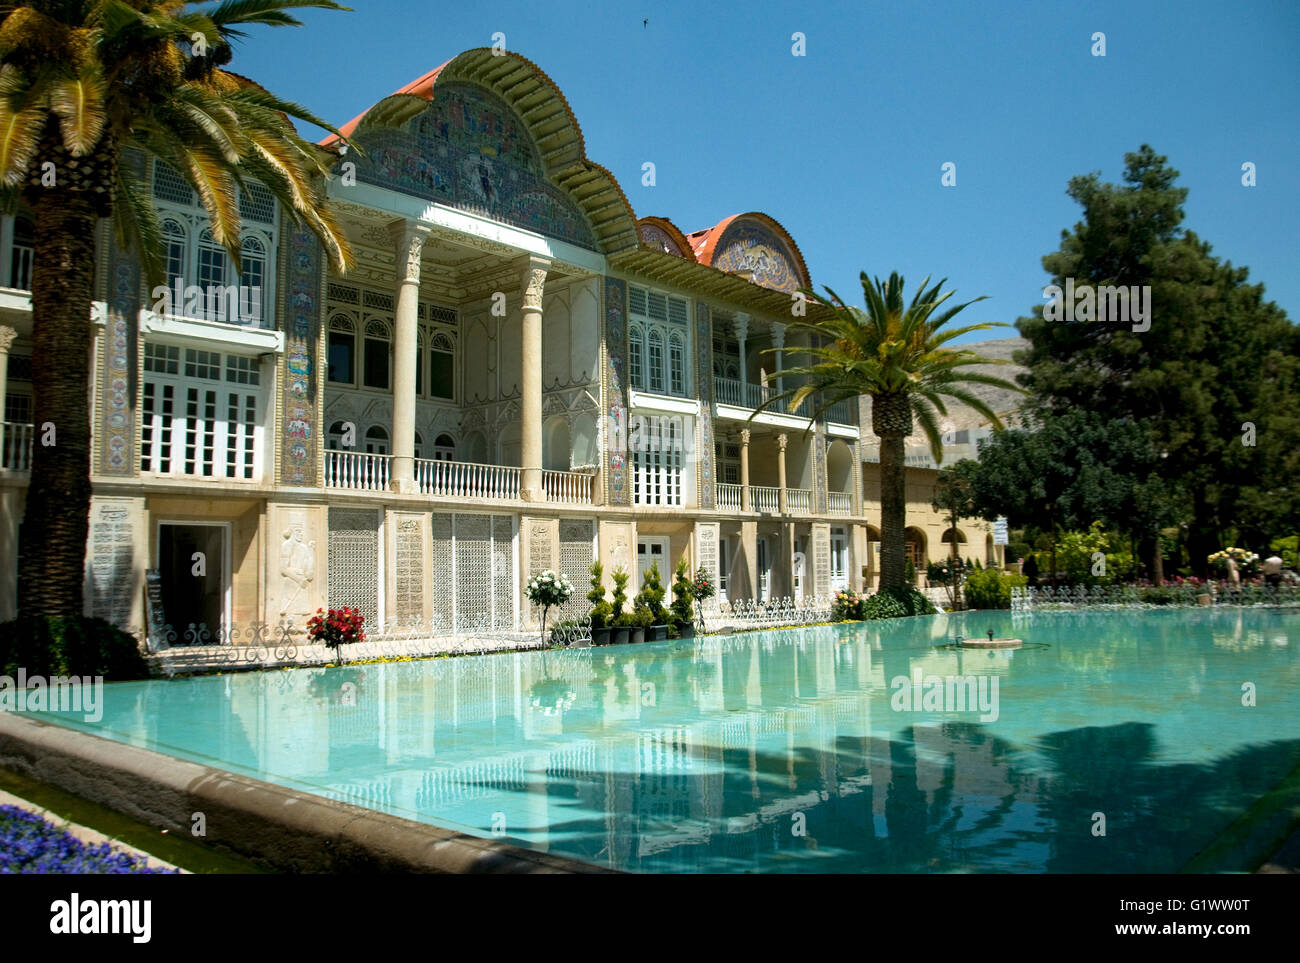 En Shiraz, Irán, el Eram jardines botánicos son adornados por una buena casa y piscina originalmente construida alrededor de 1823. Foto de stock